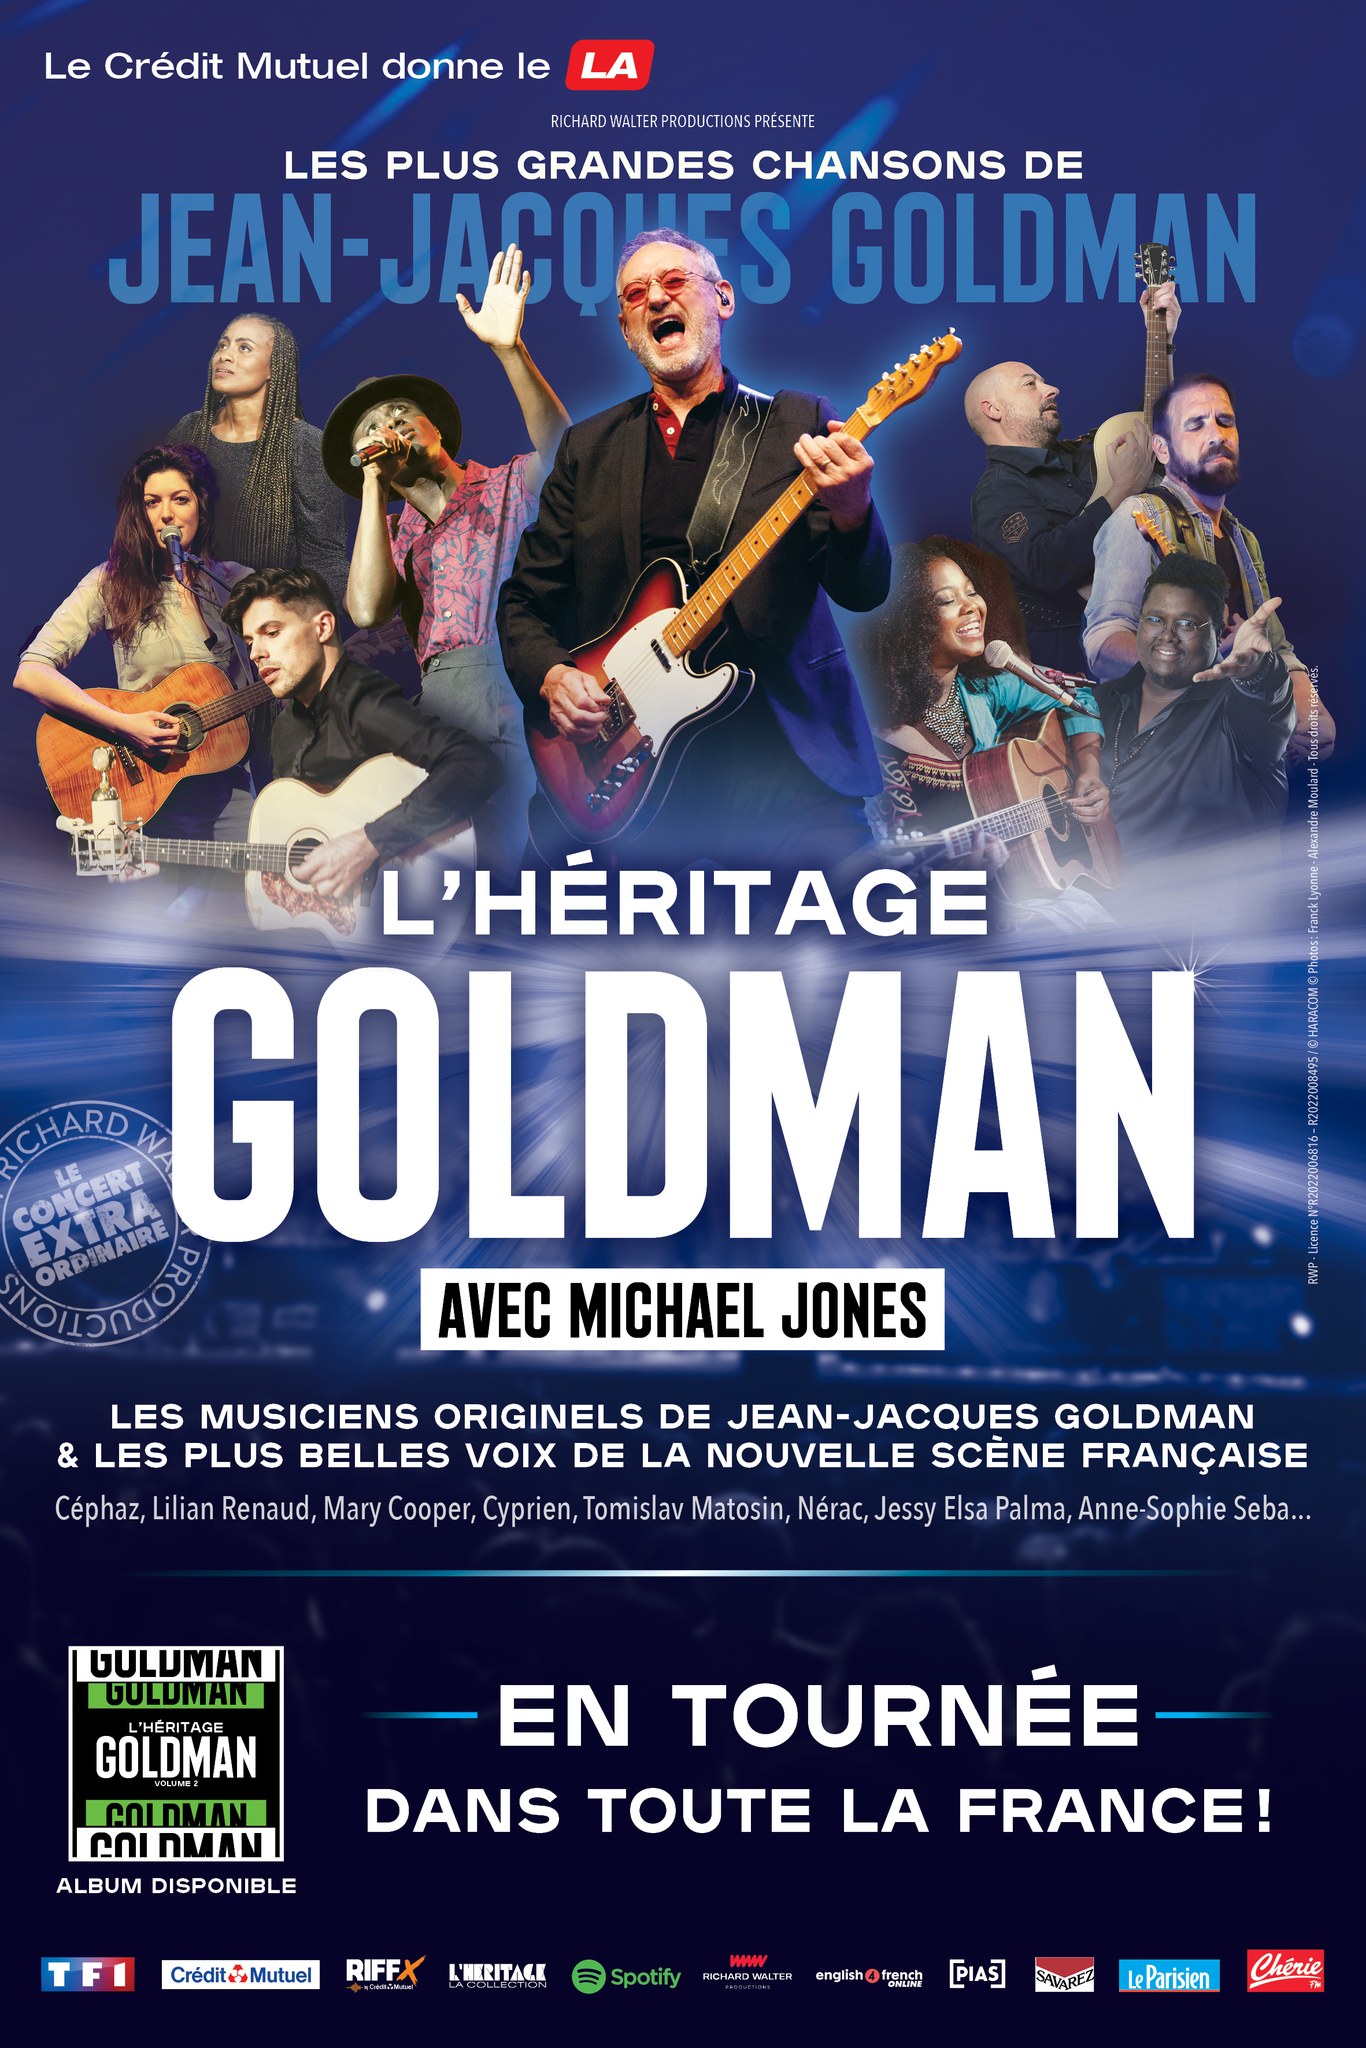 Billets Heritage Goldman (Palais des Sports - Dome de Paris - Paris)